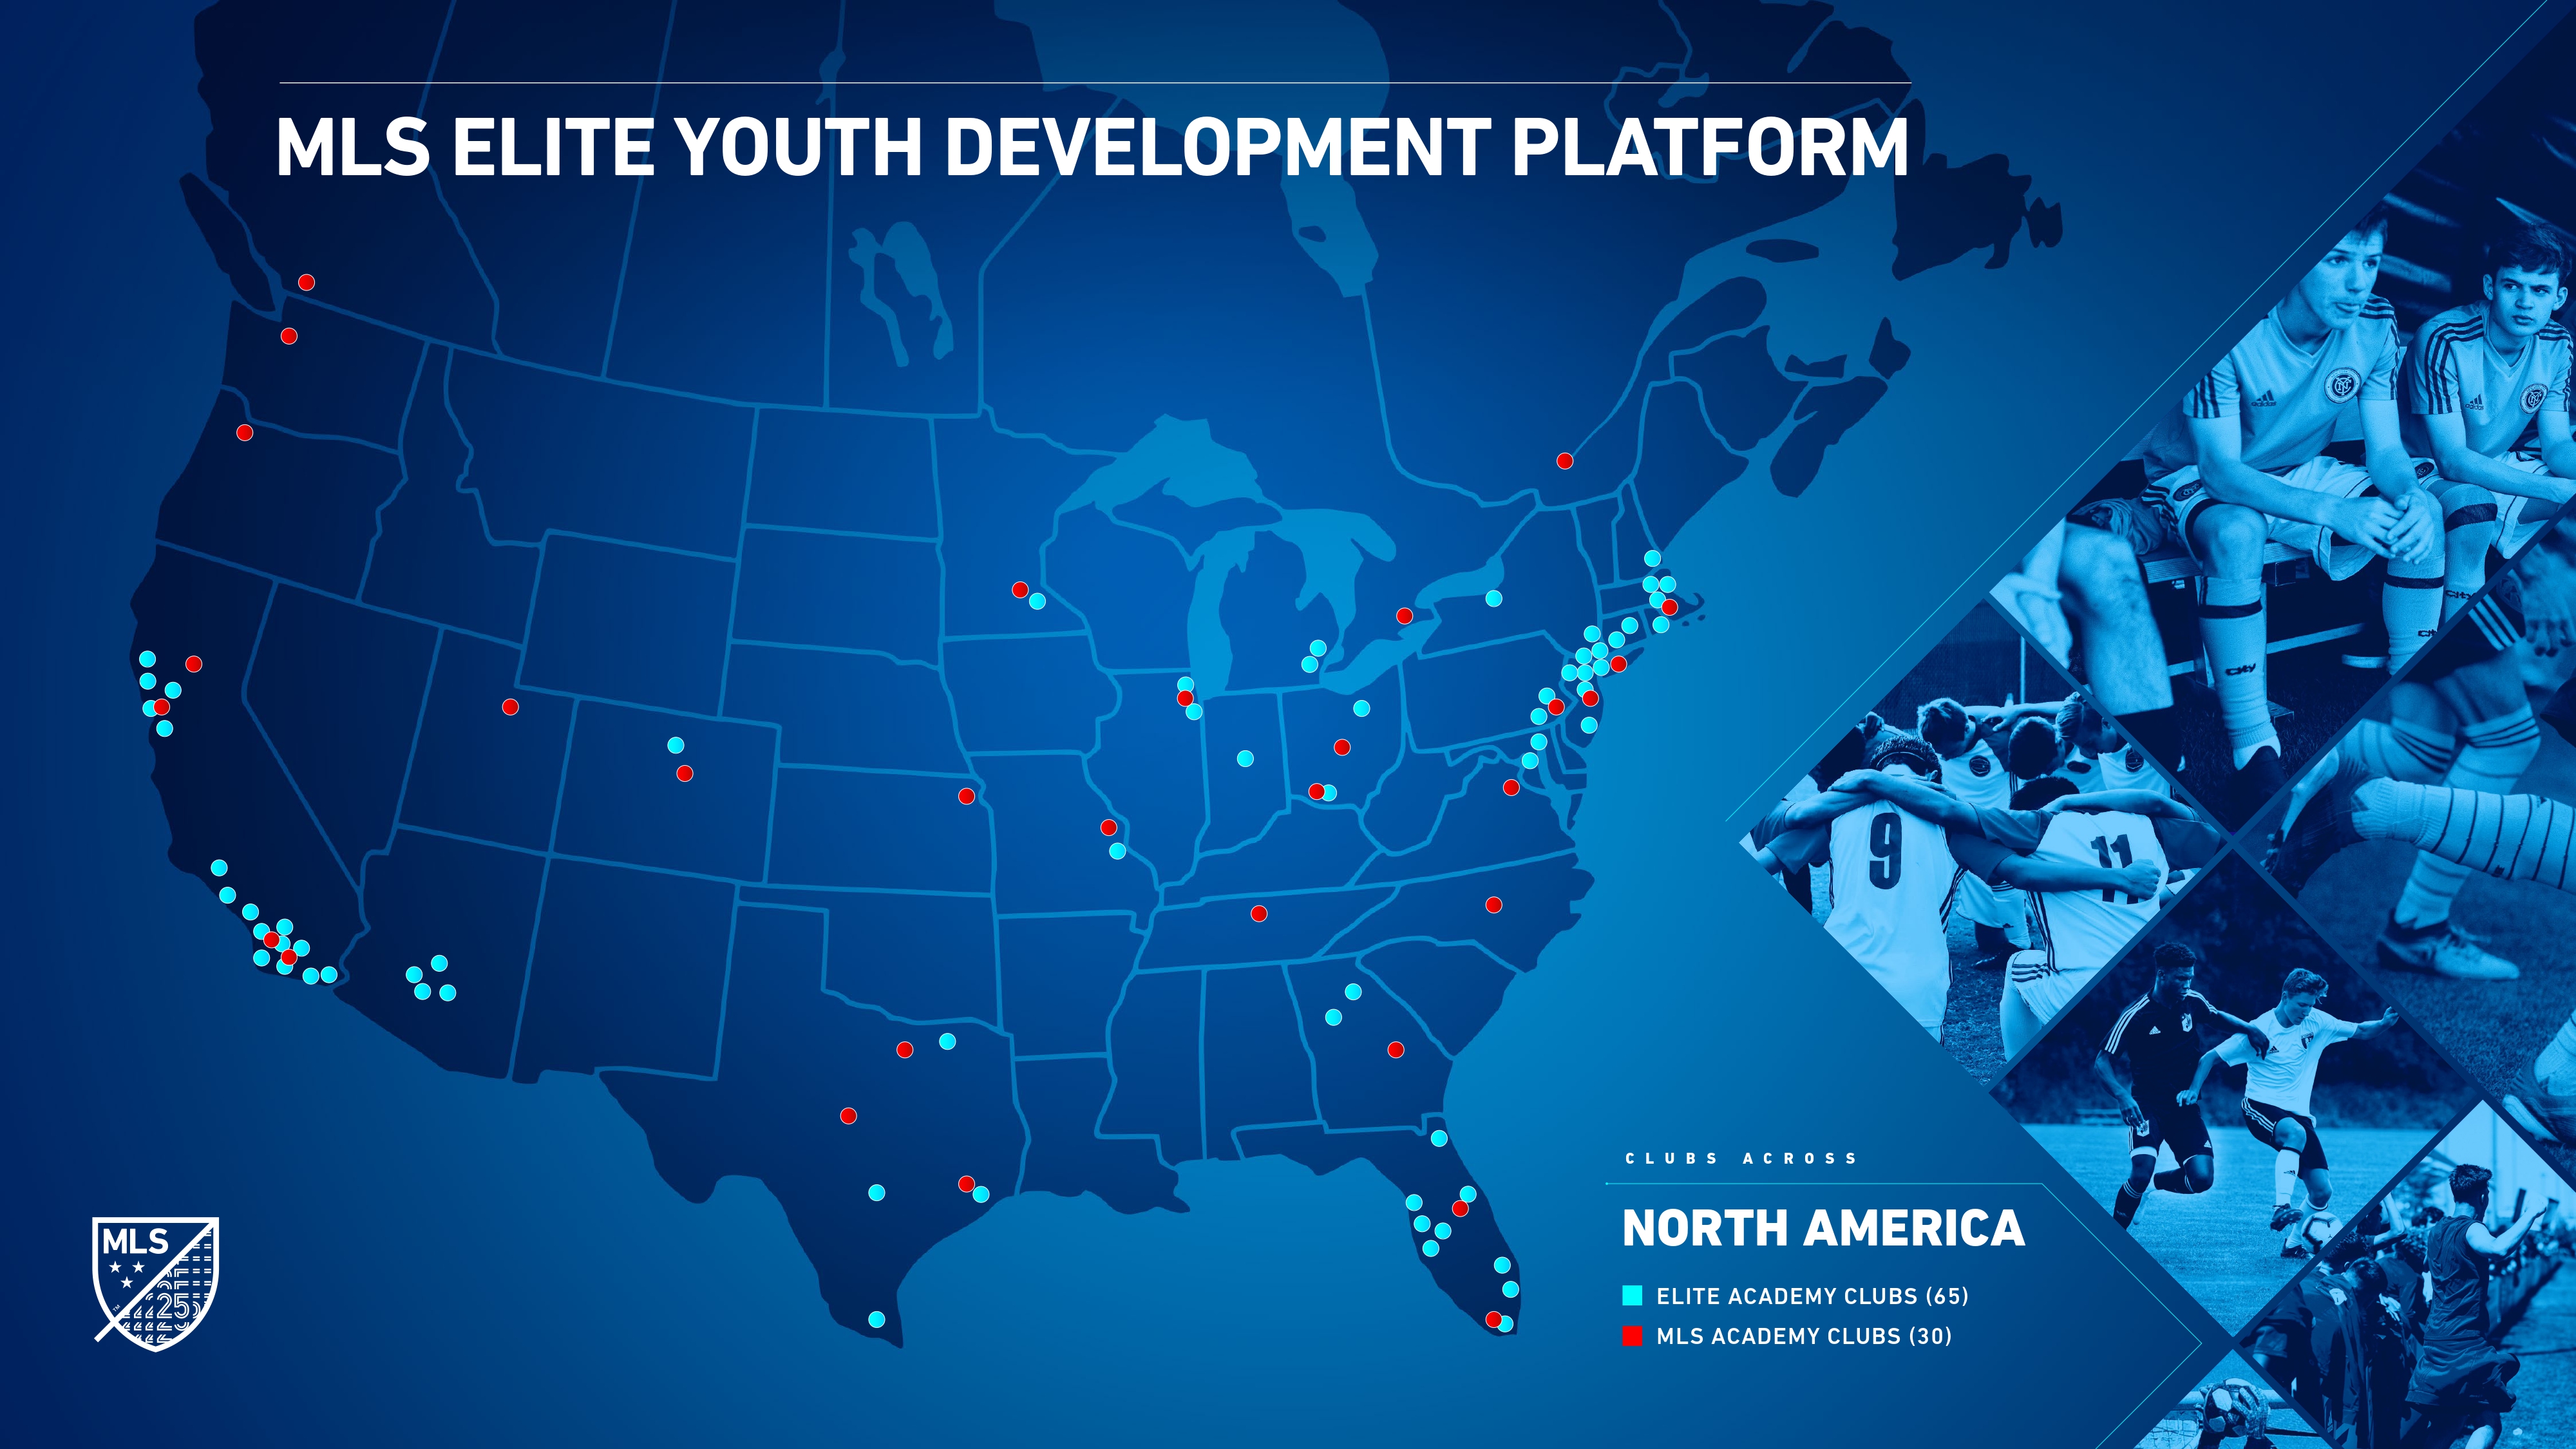 A new era for soccer development in North America.